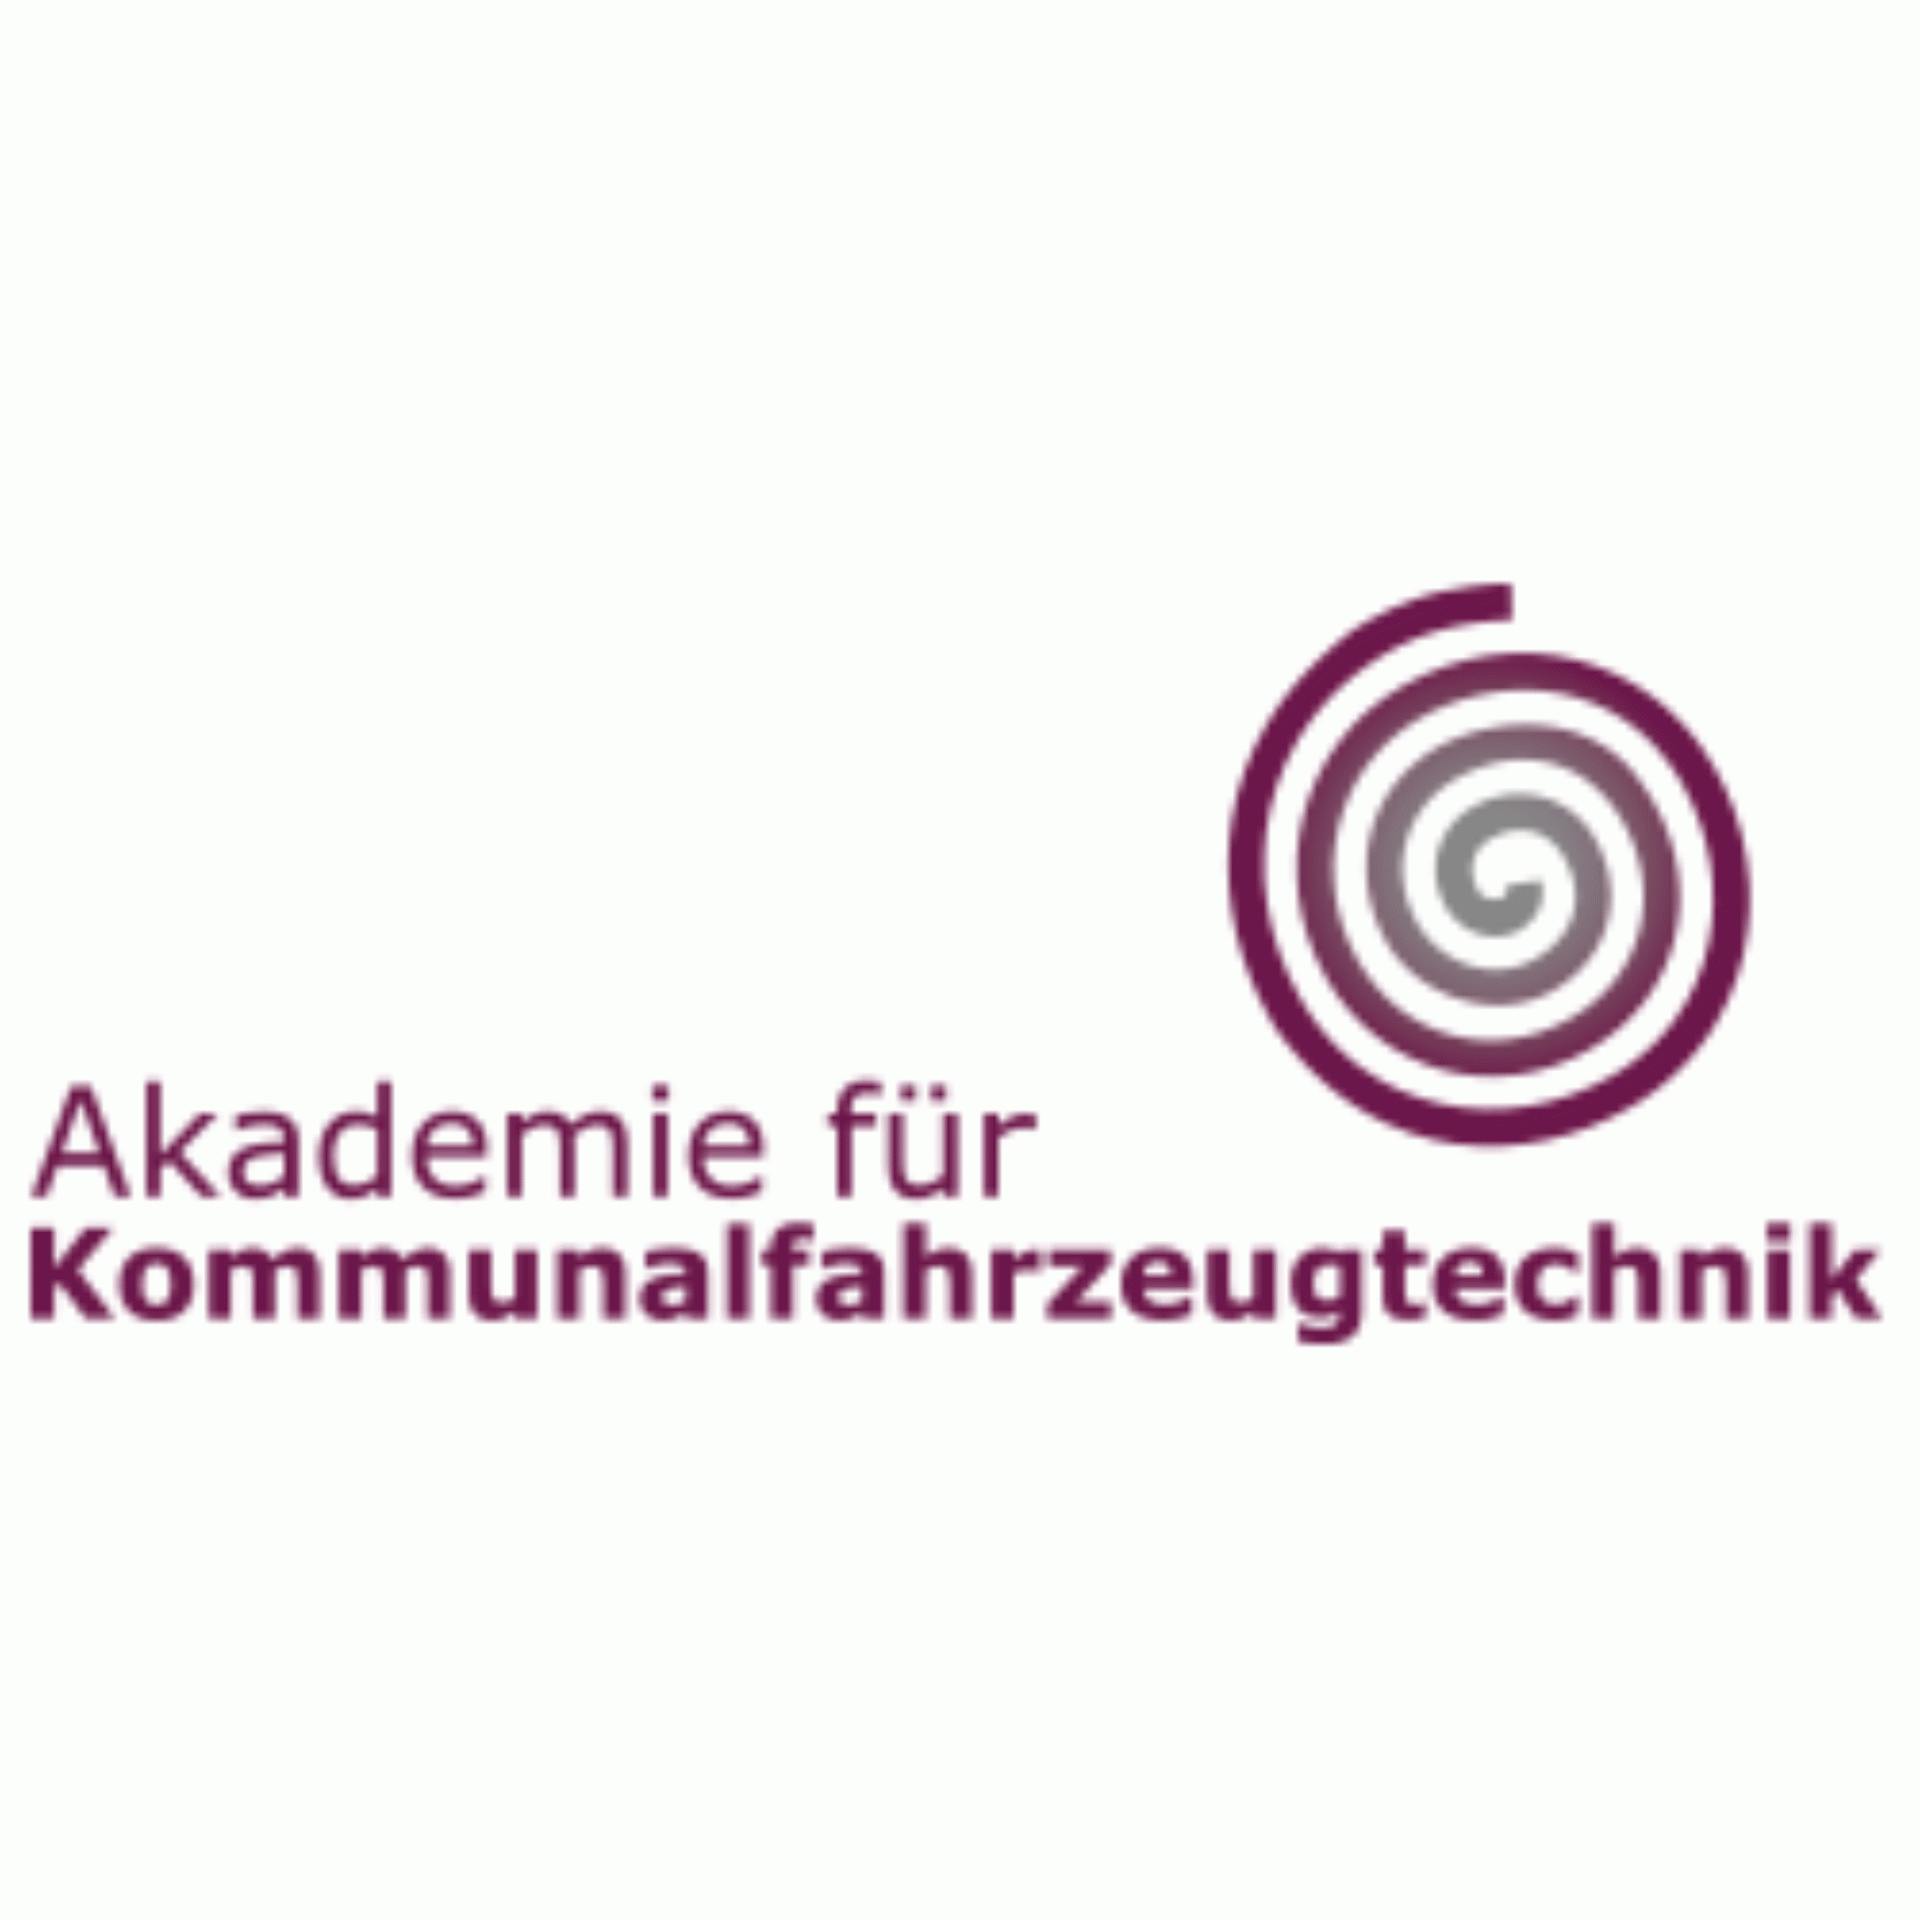 AKT Akademie für Kommunalfahrzeugtechnik GmbH